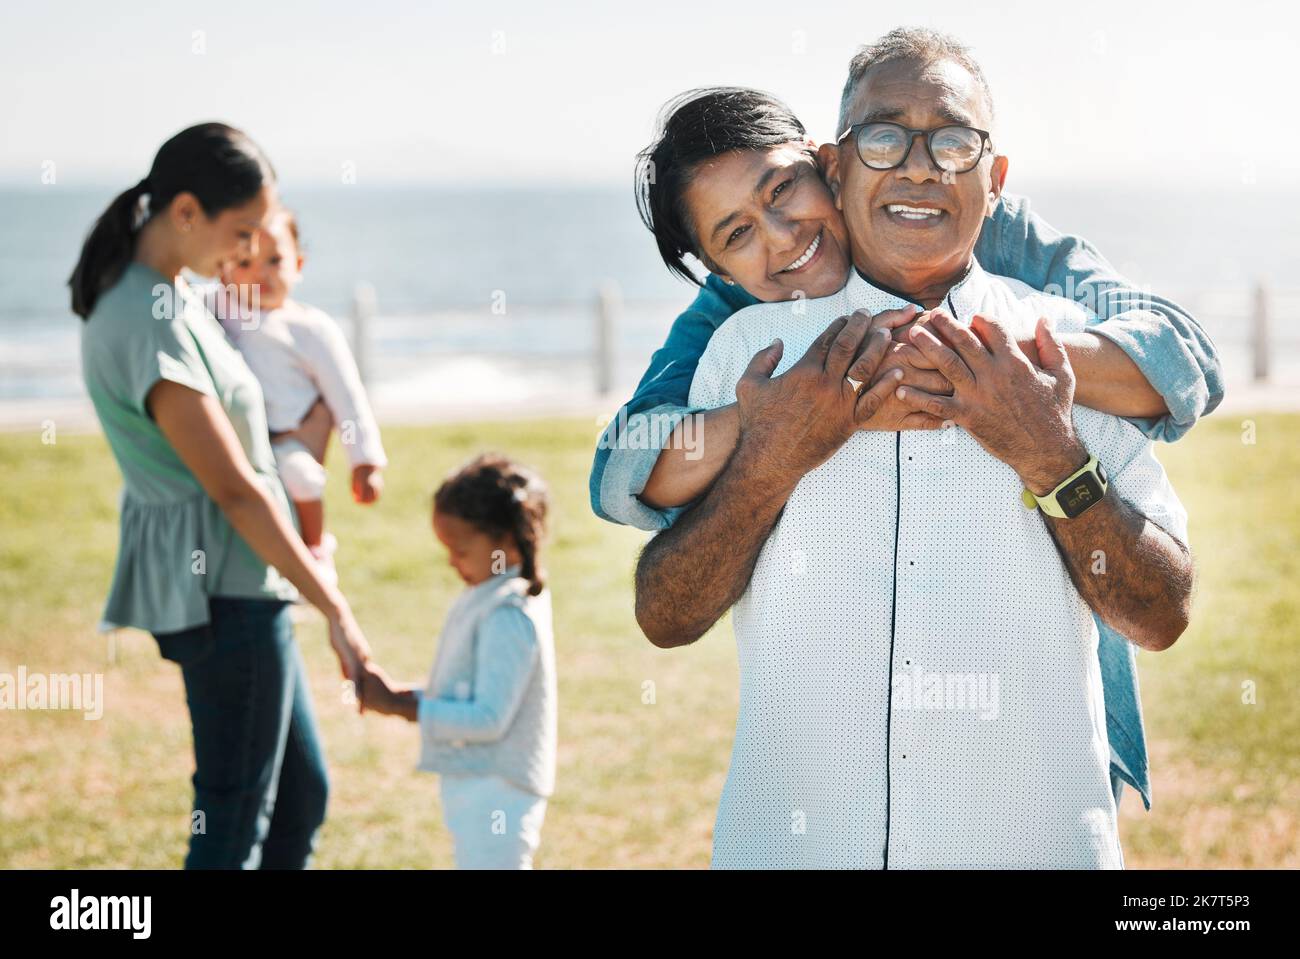 Famiglia, amore e ritratto dei nonni in parco per l'estate, la salute e la pensione insieme. Felice, stile di vita e legame con i bambini e gli anziani Foto Stock